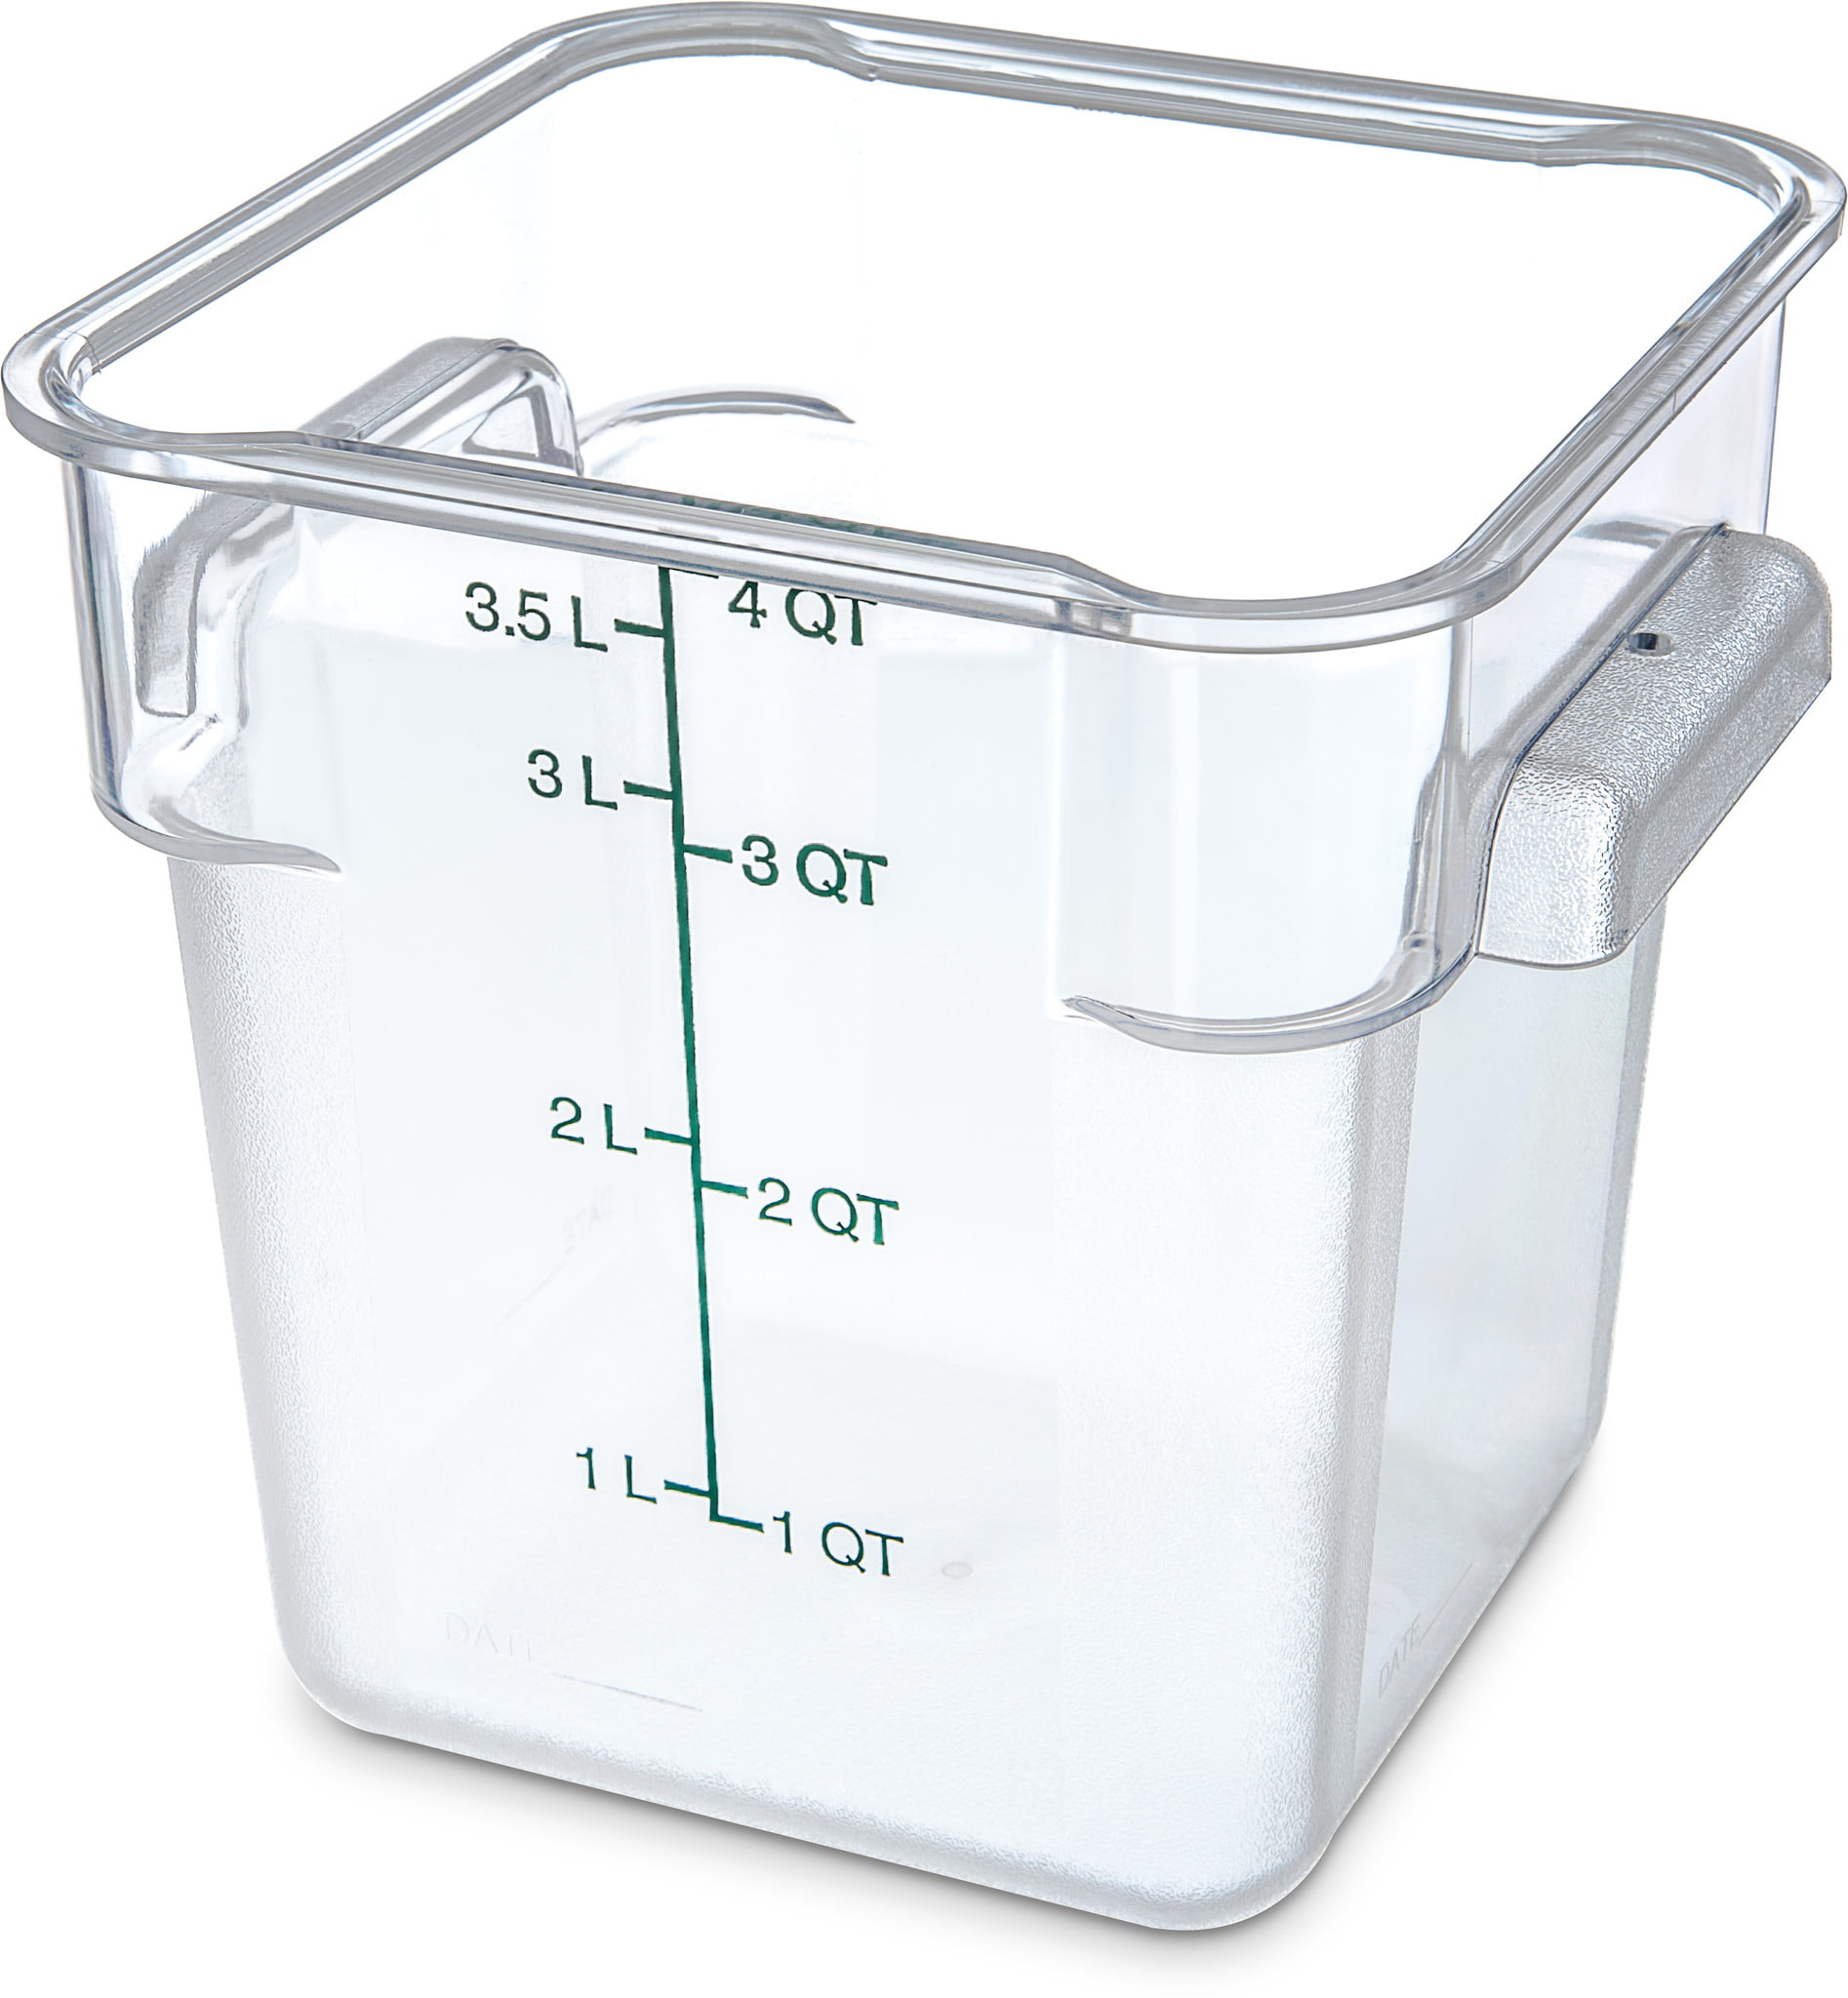 Food Storage Box 4 Qt Translucent Plastic 12 5/8"L x 8 1/4"W x 4 1/4"D 